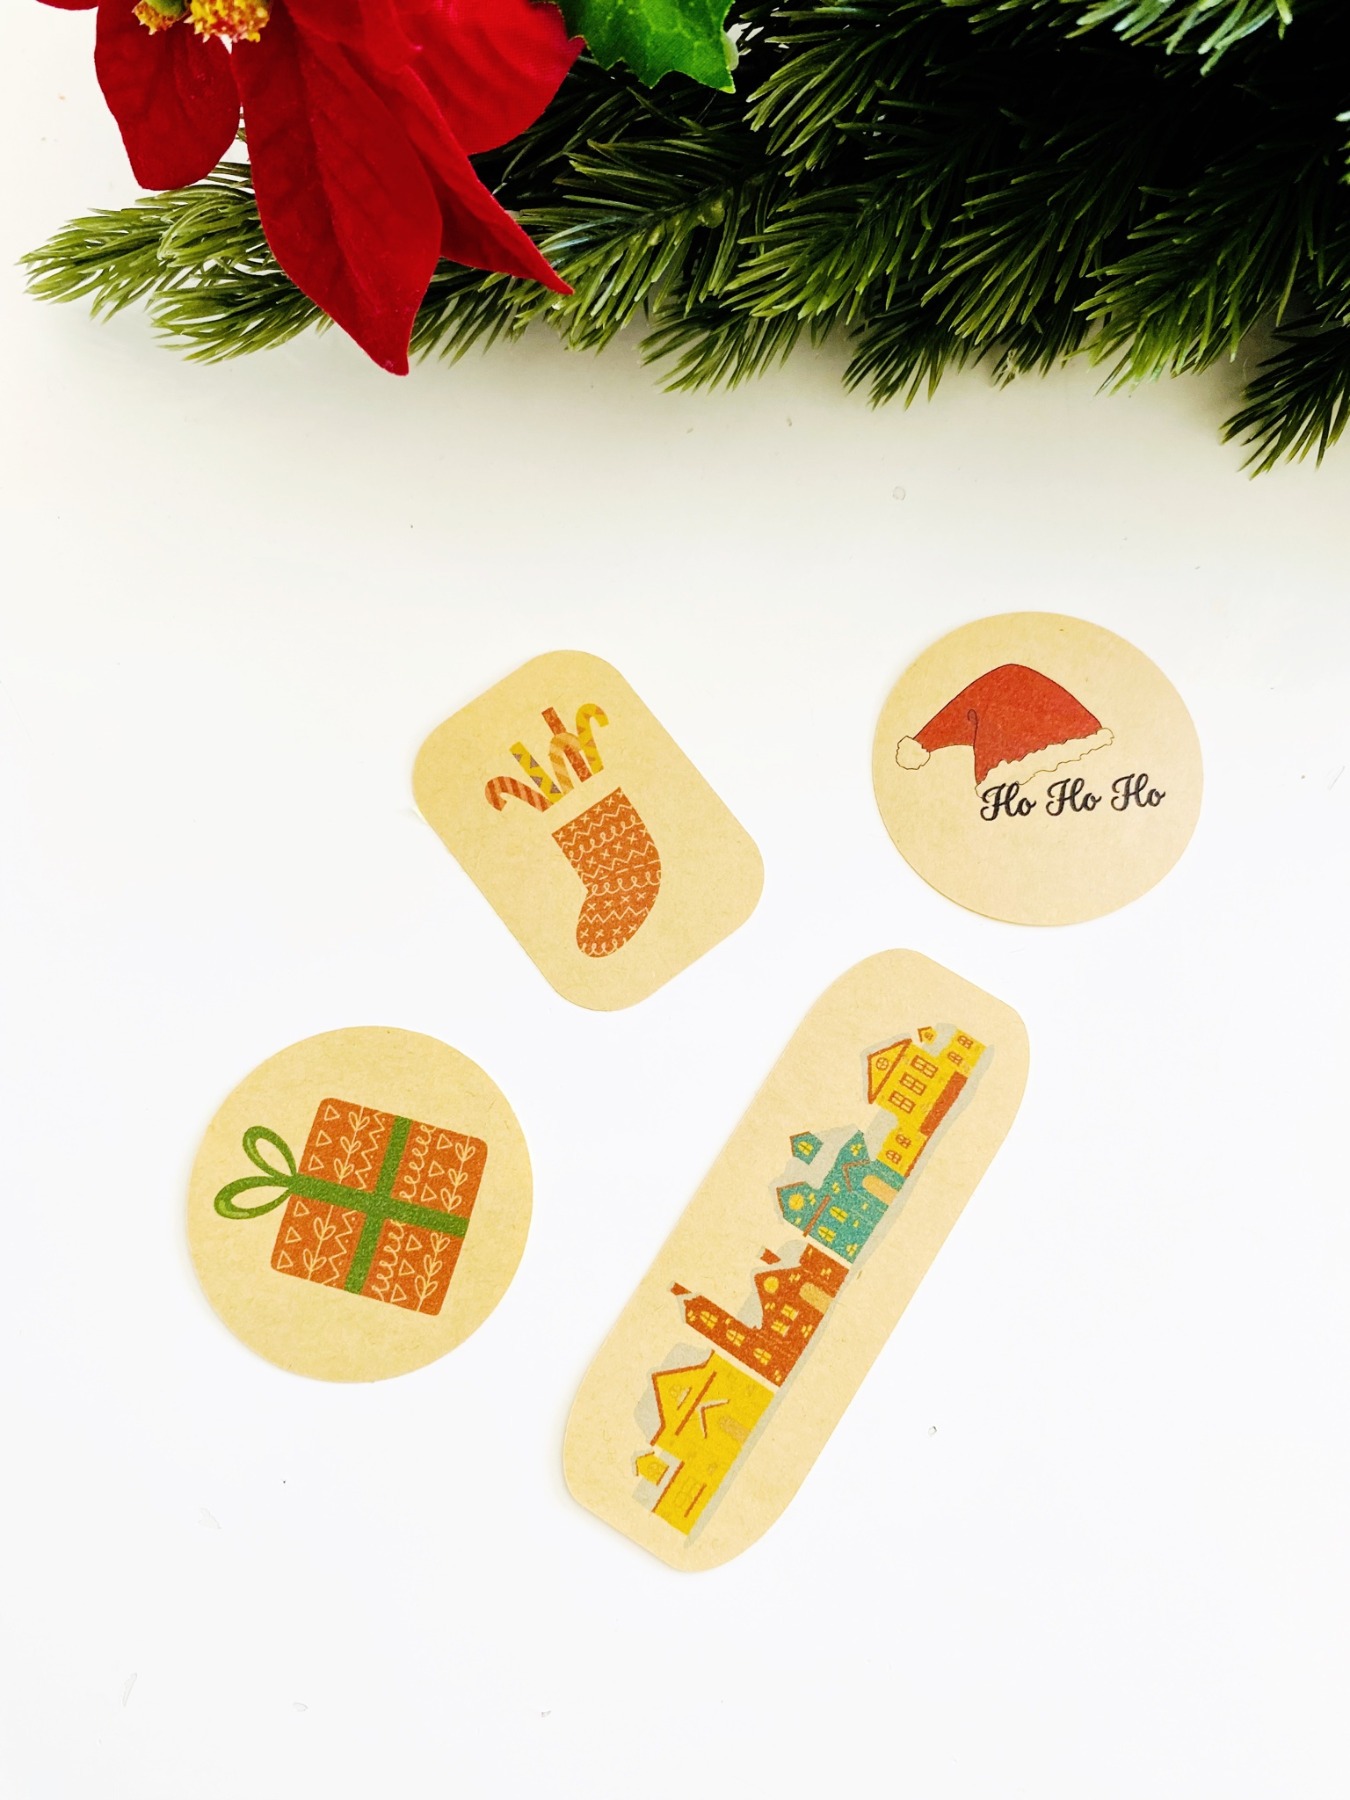 Bastelset für Weihnachten, DIY Kit Weihnachtskarten basteln, Weihnachtsgeschenke verpacken Ideen 16